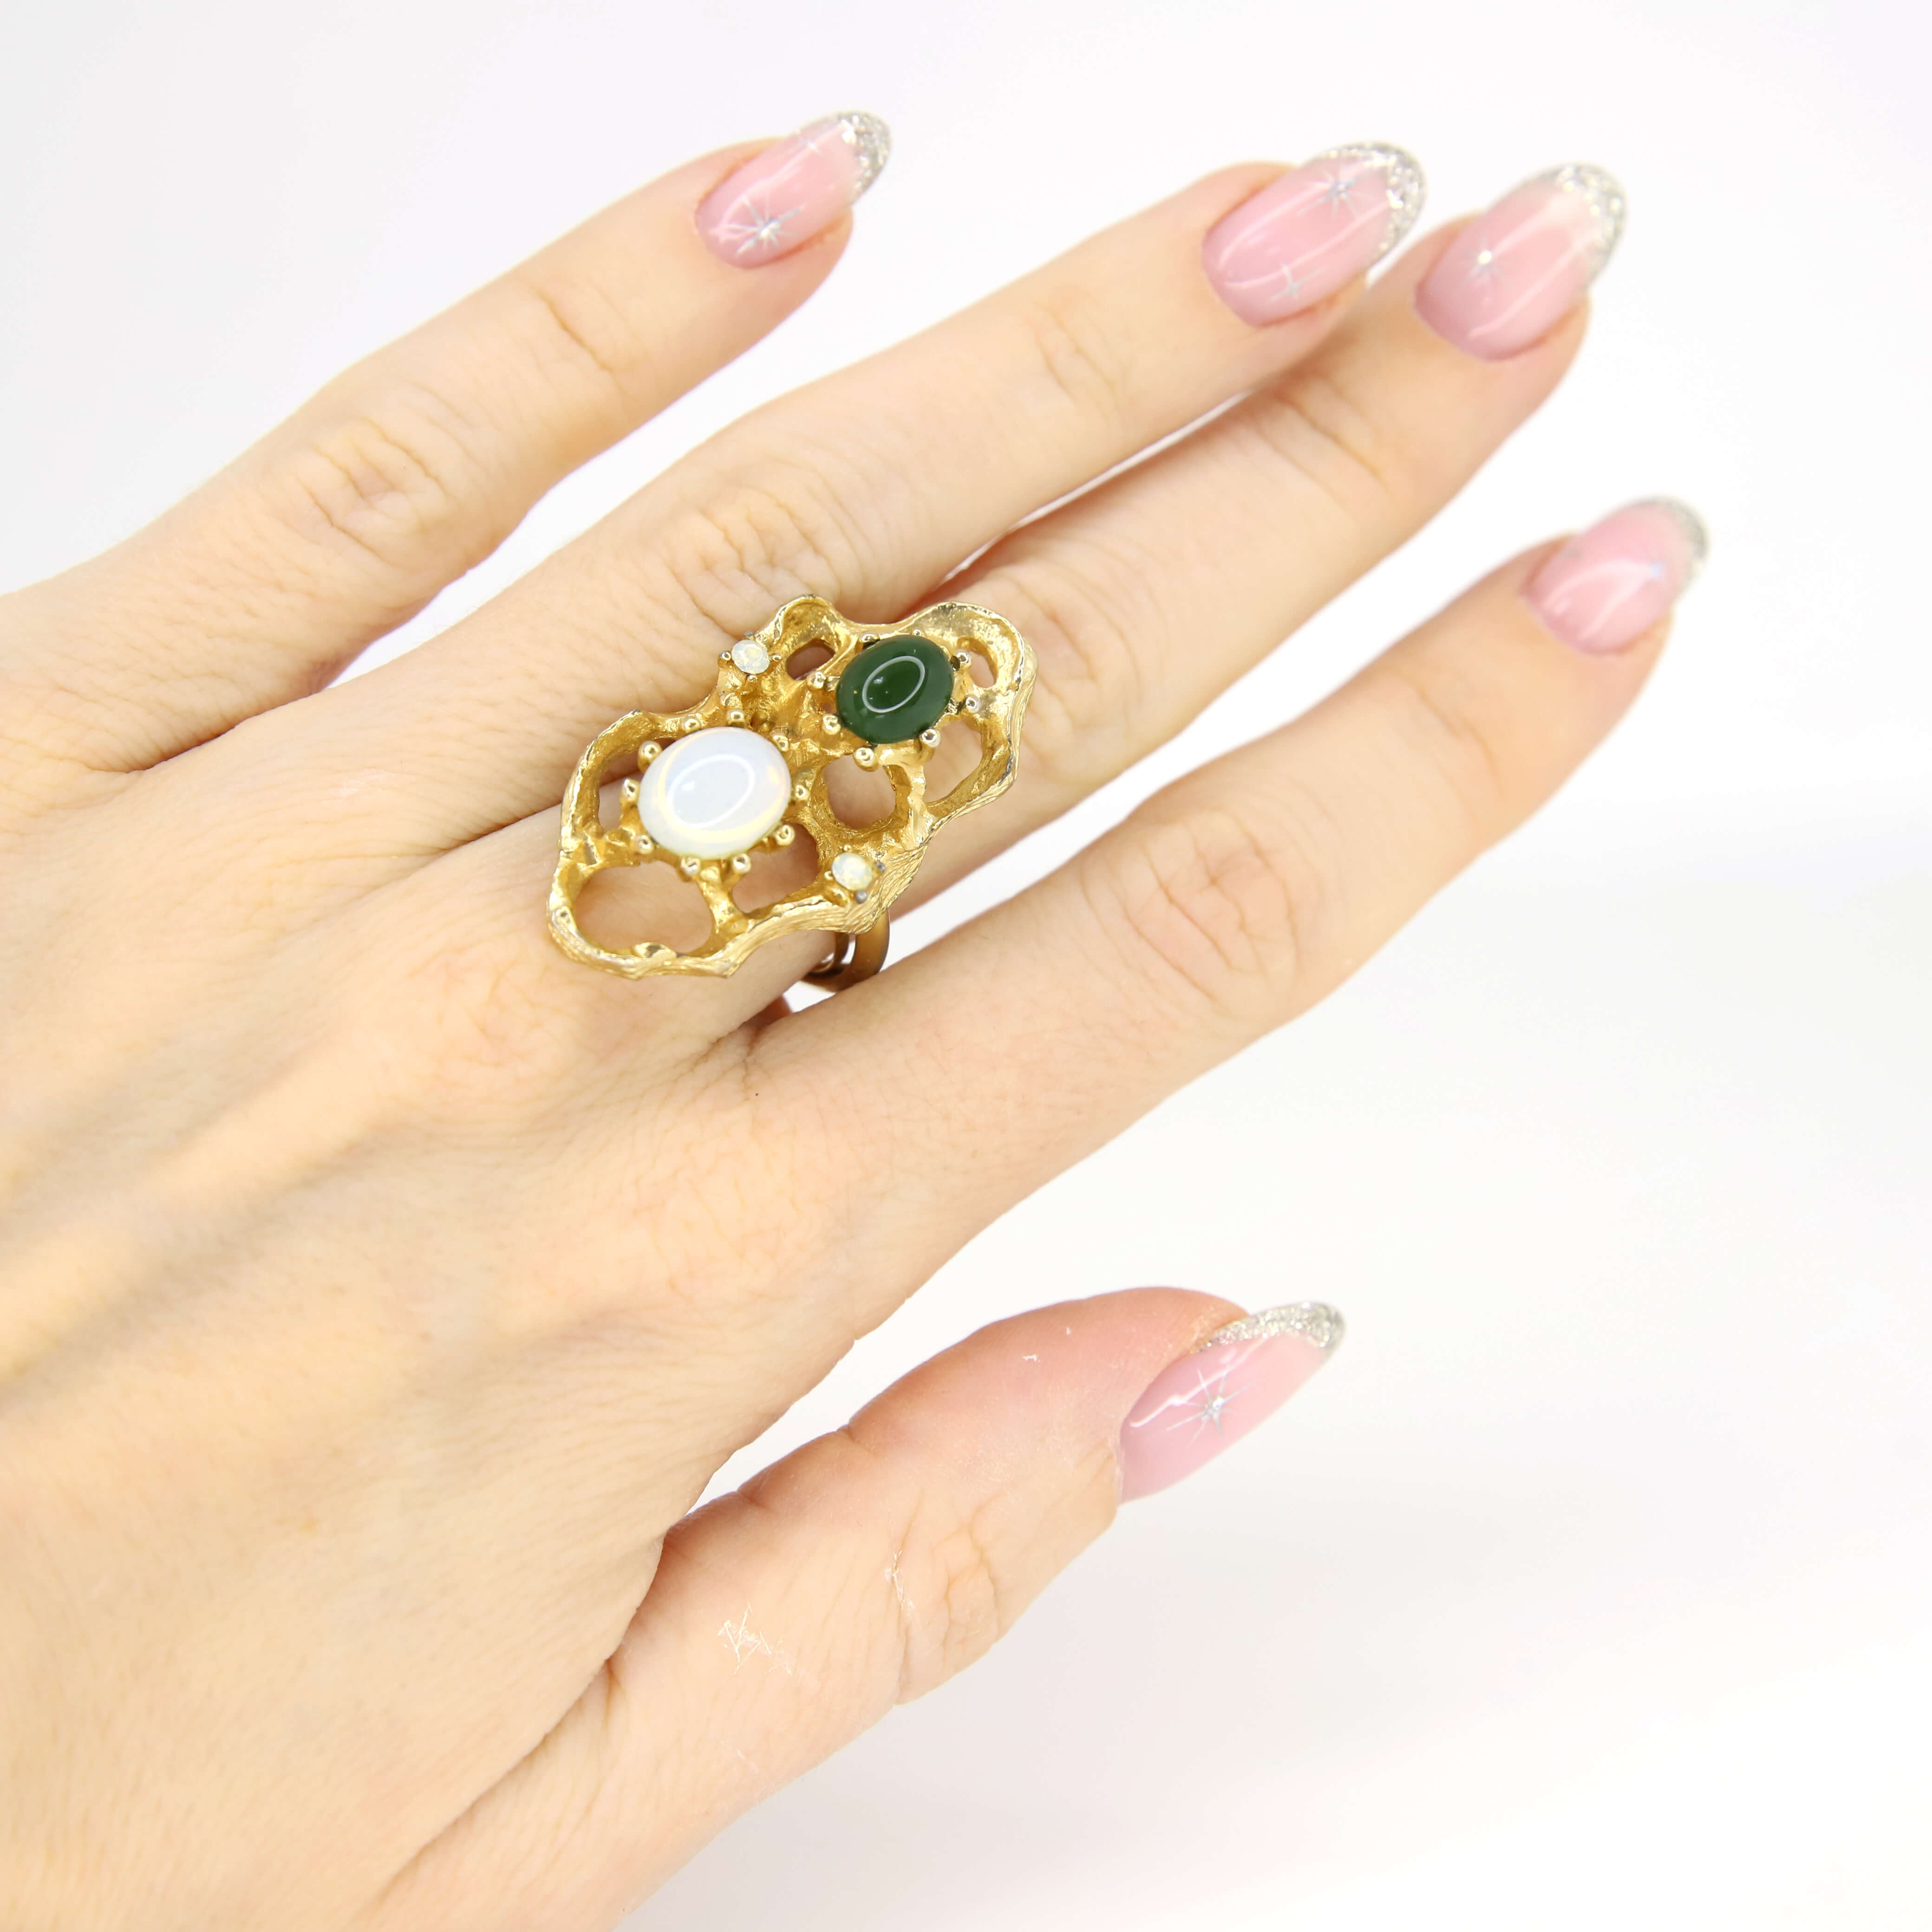 Винтажное кольцо Vogue размер 15,5-17.5, цвет Зеленый, фото 1